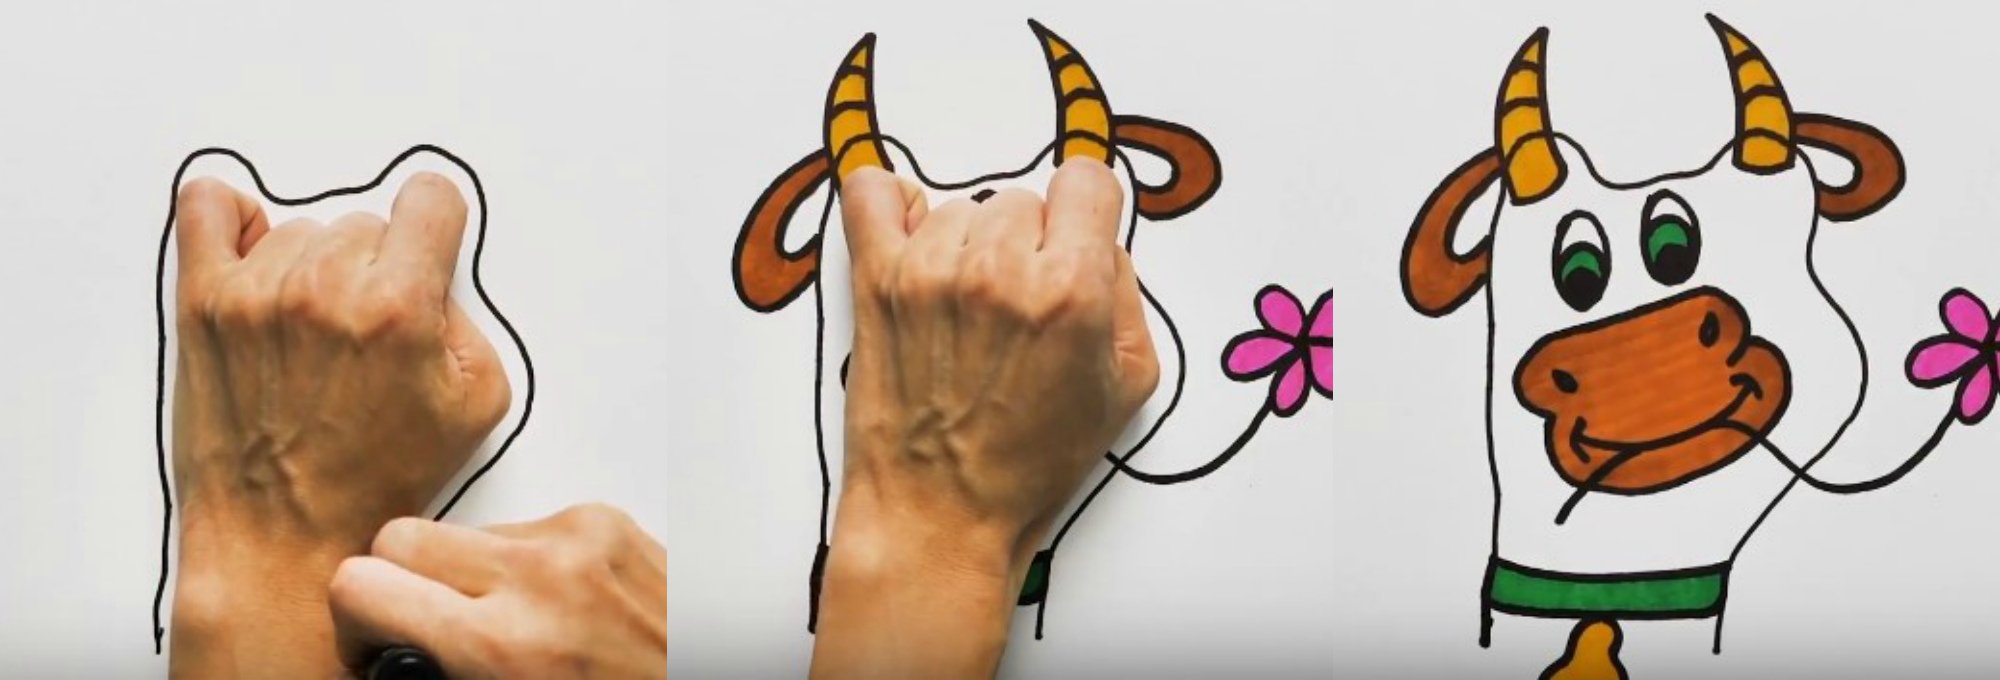 Рисуем животных с помощью ладони